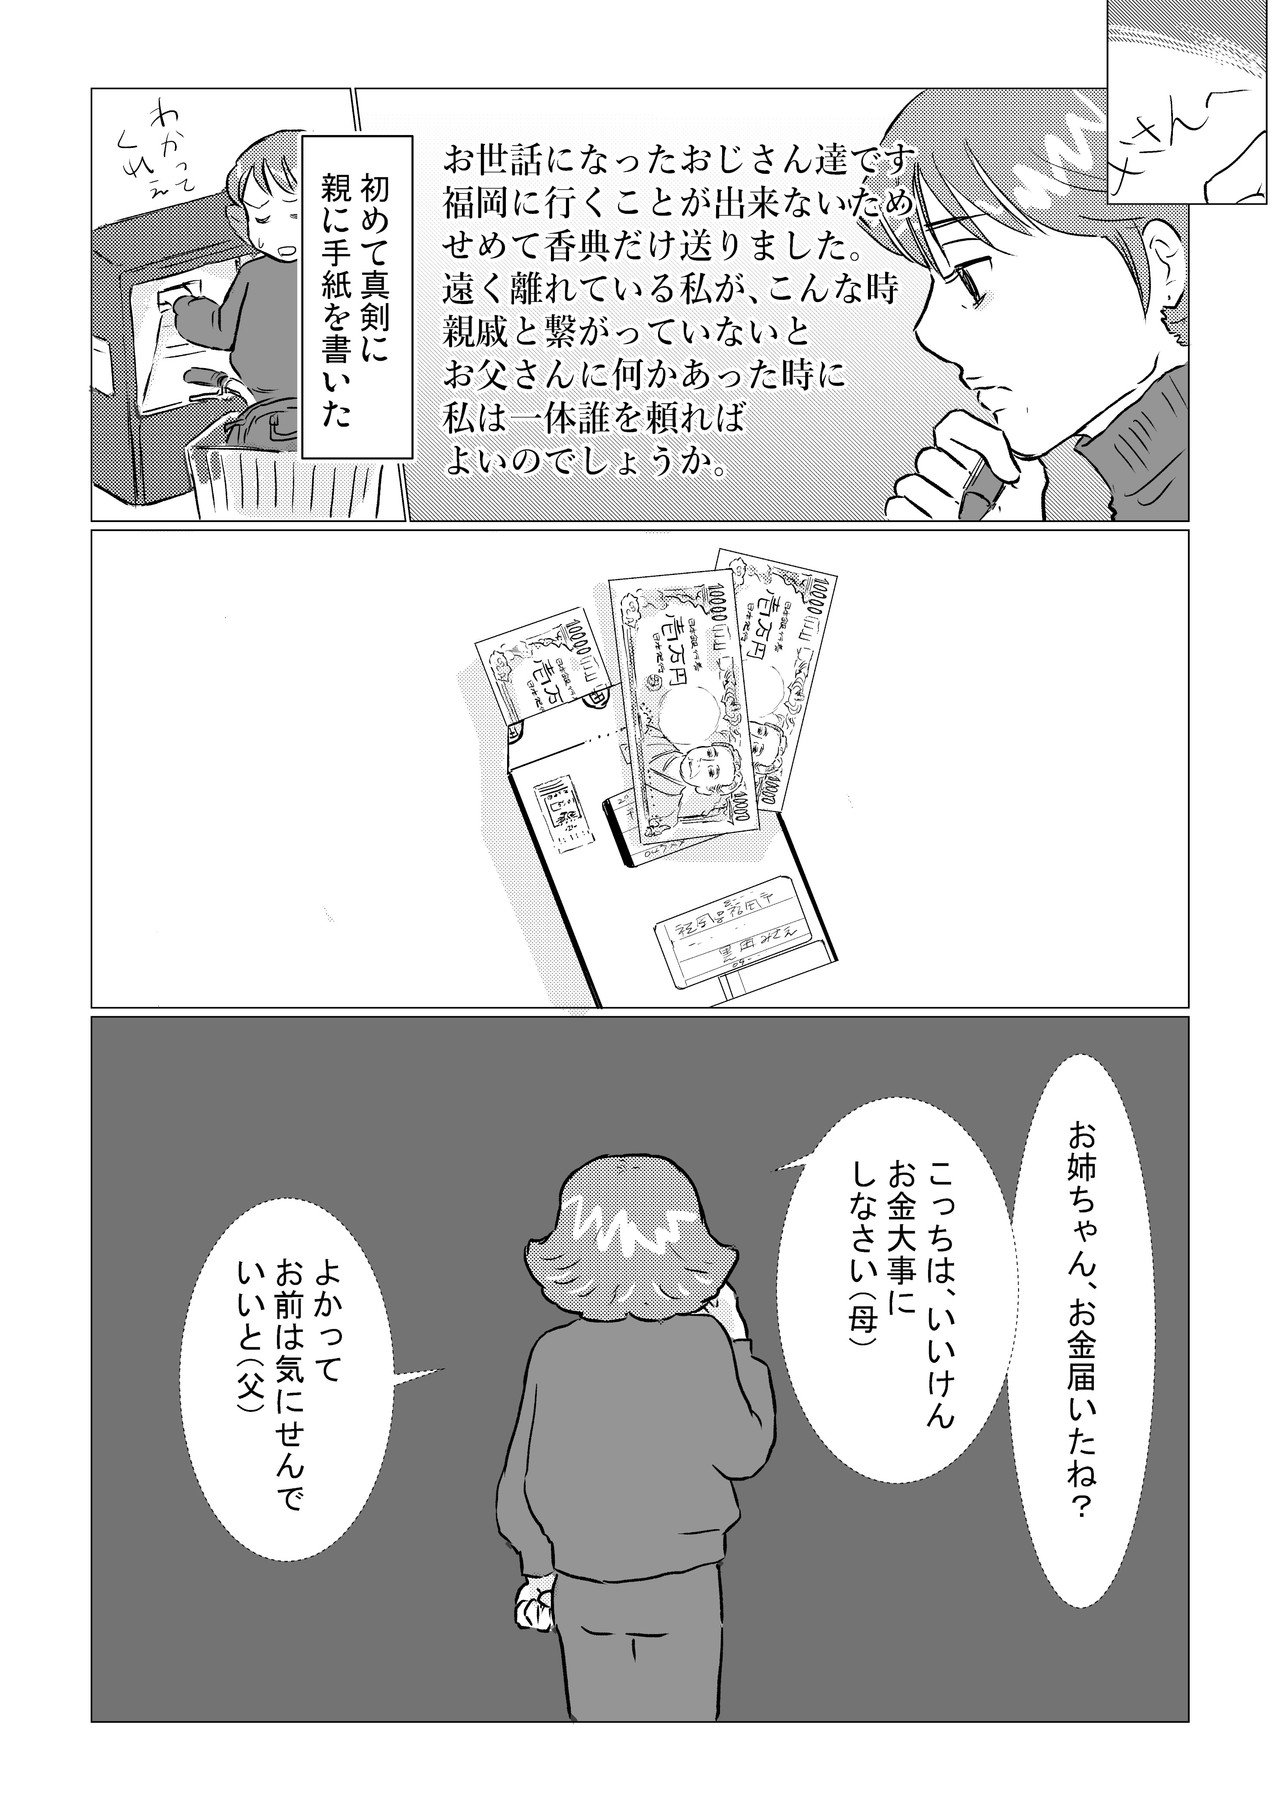 コミック４_003